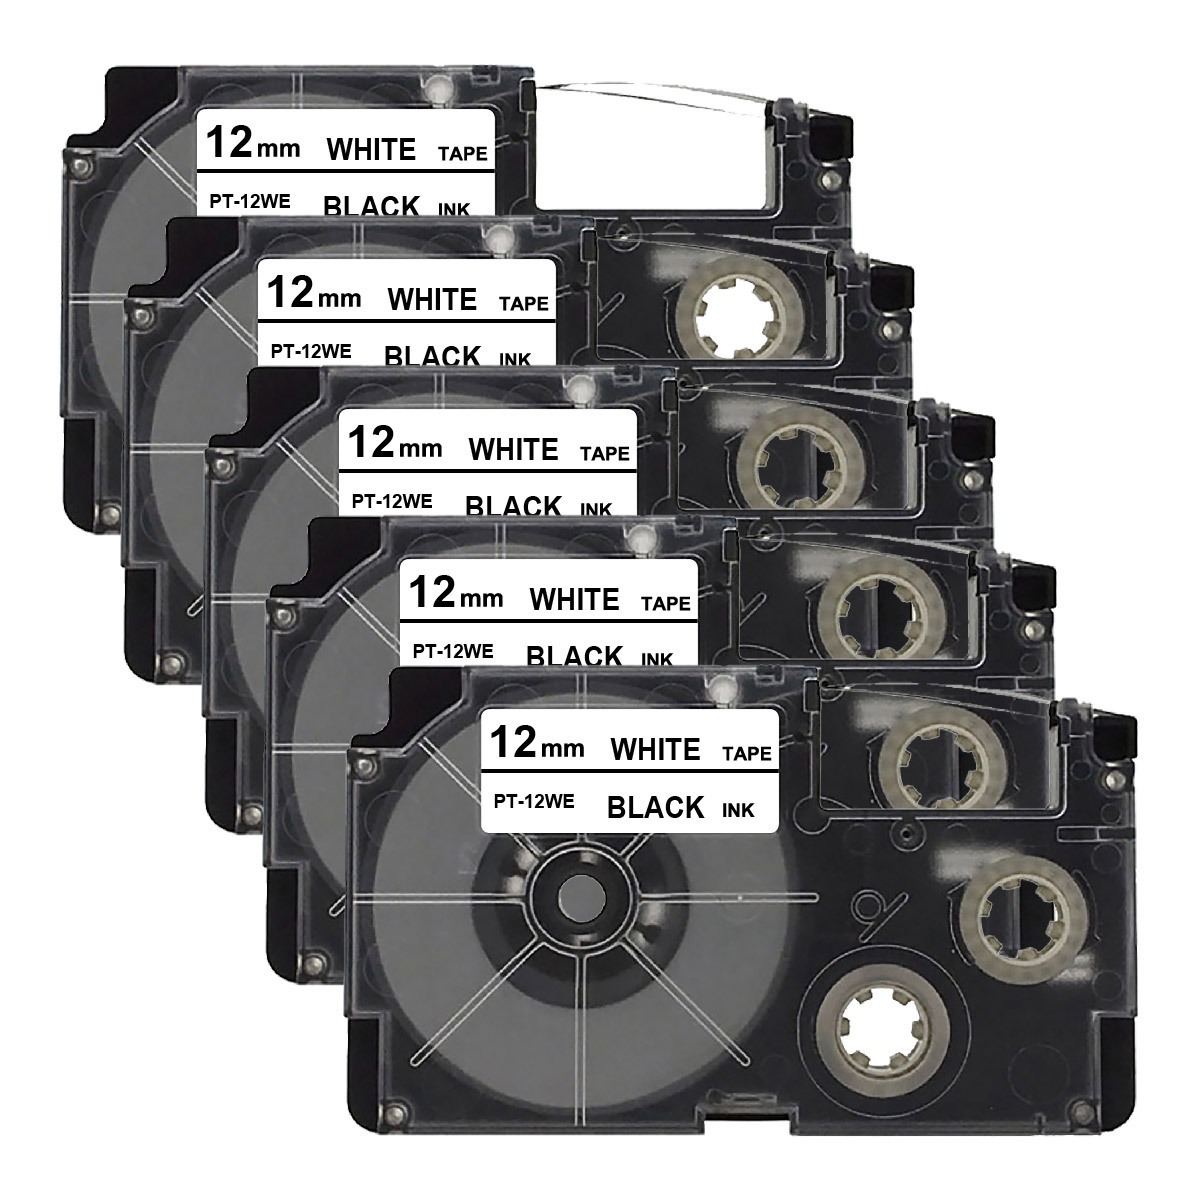 カシオ用 ネームランド 互換 テープ カートリッジ 12mm 白 テープ 黒文字 長8m PT-12WE 5個セットの画像1